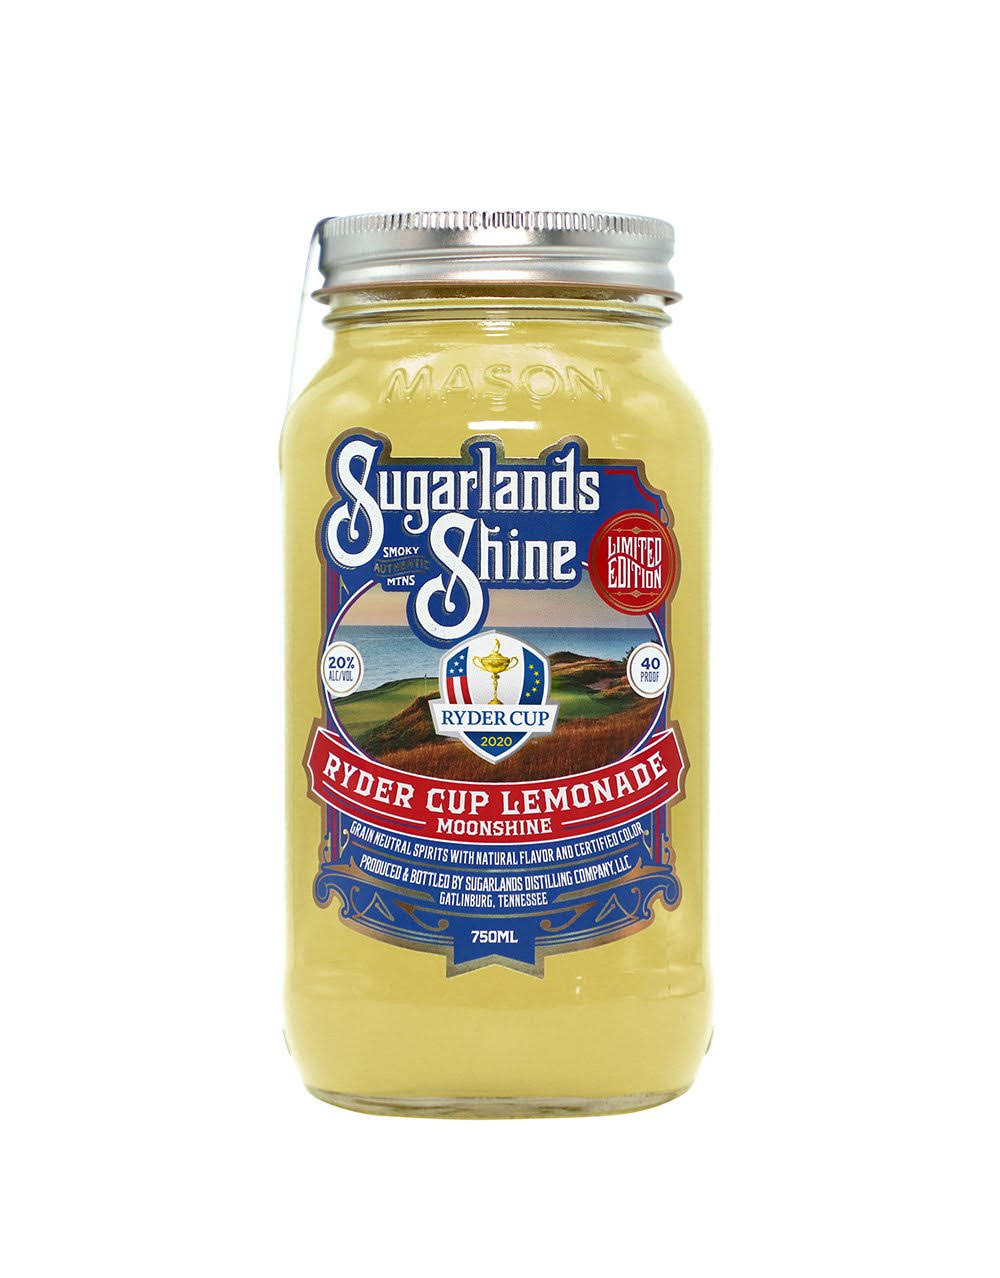 Sugarlands Shine Ryders Cup Lemonade - 750 ml